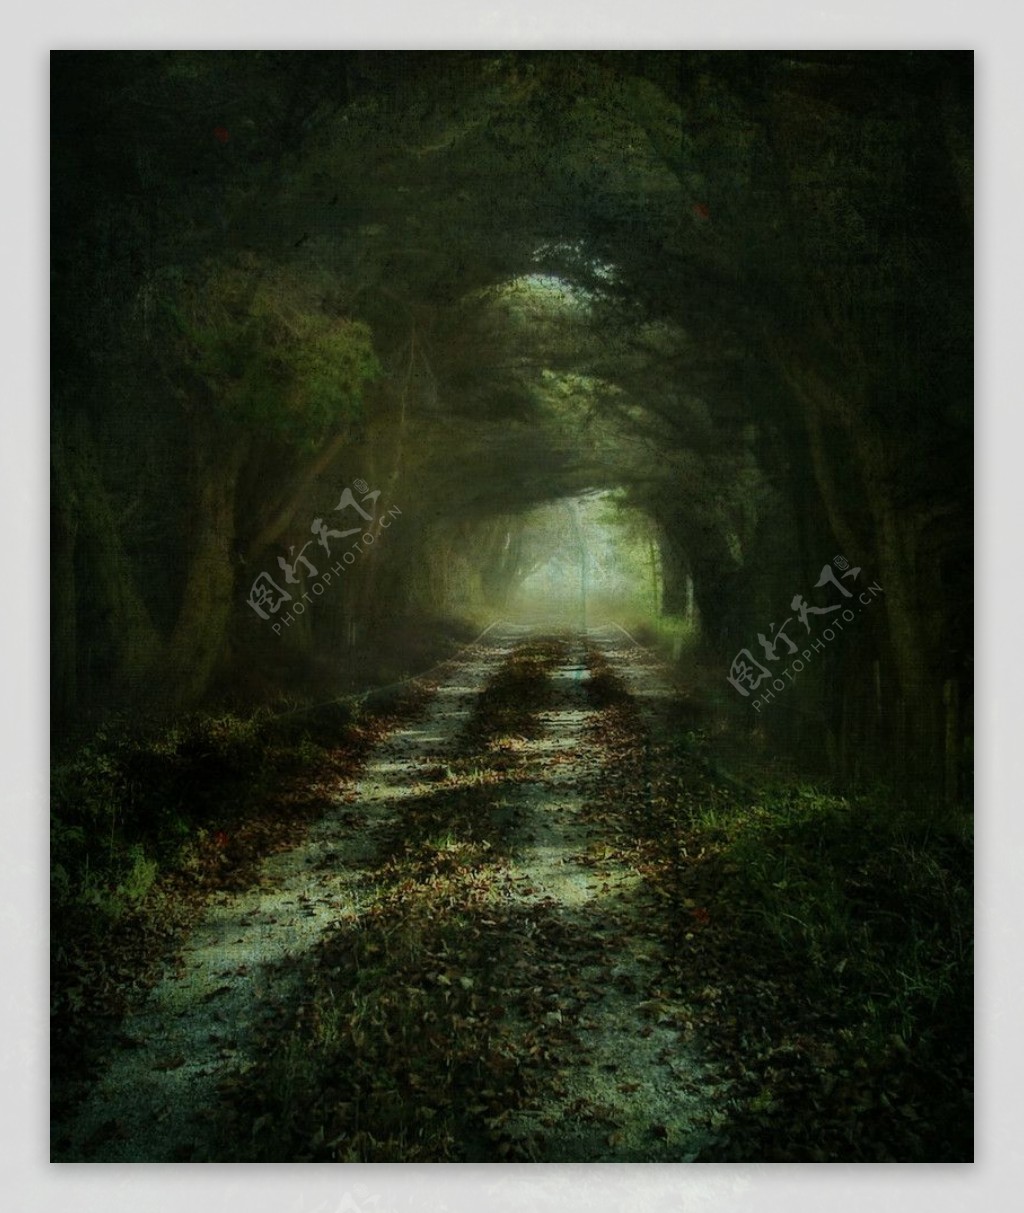 幽暗的林间道路图片